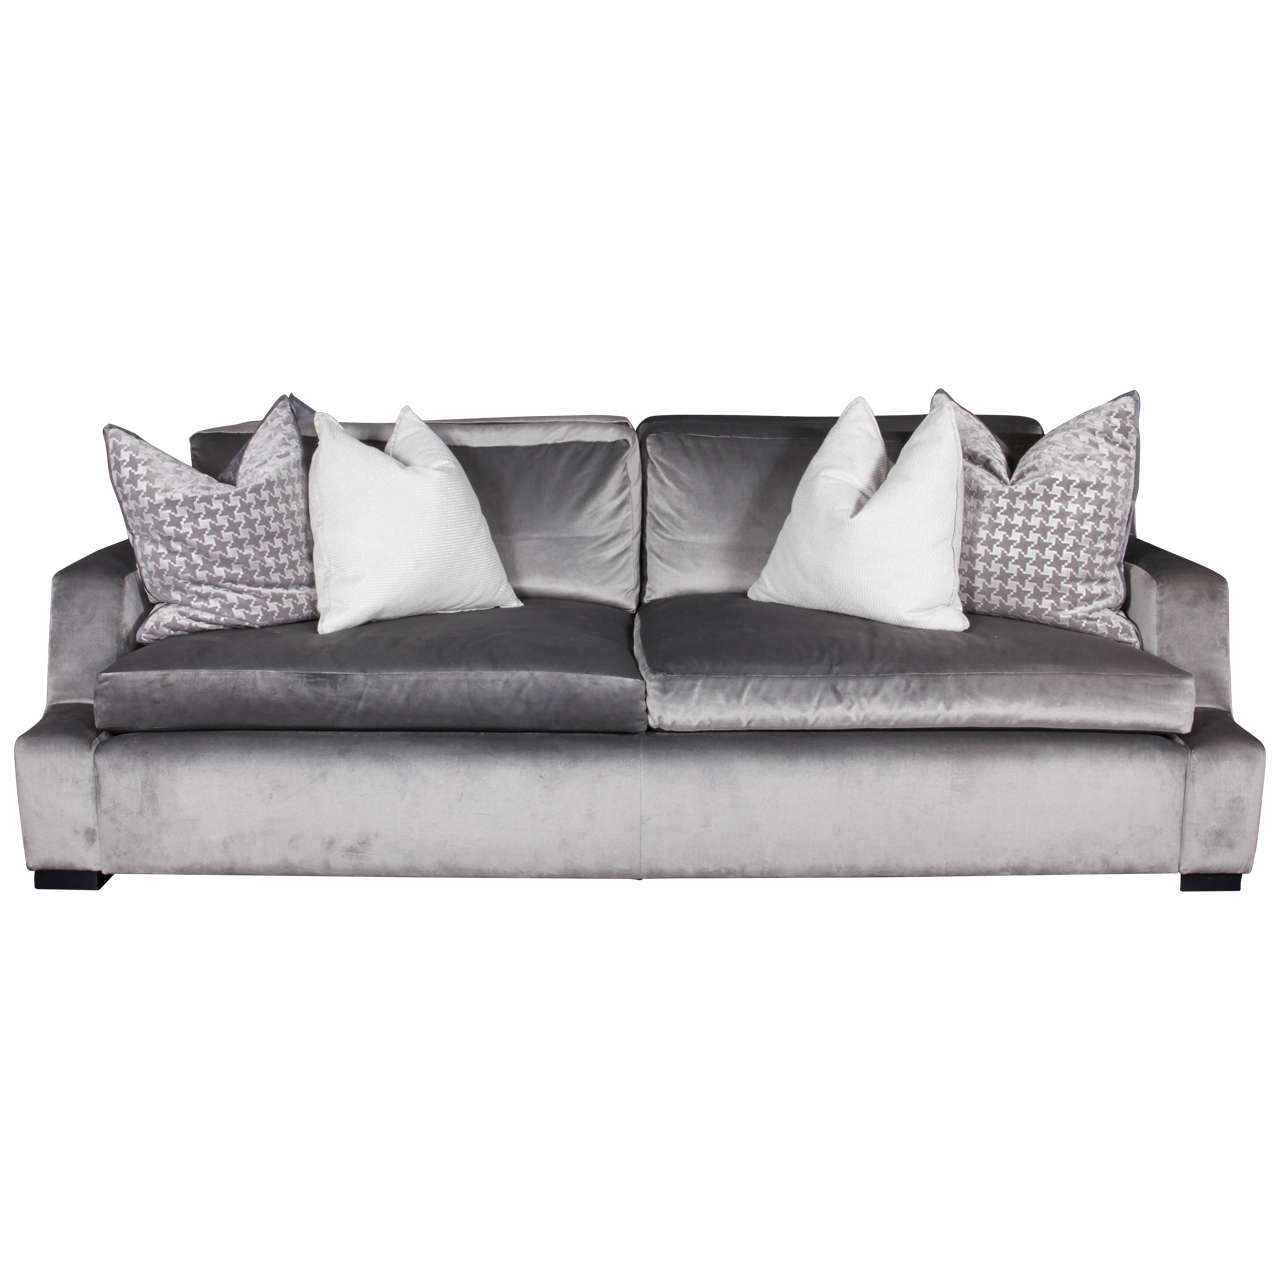 Custom Têtê-à-Têtê Sofa with Four Custom Pillows with Flange Detail